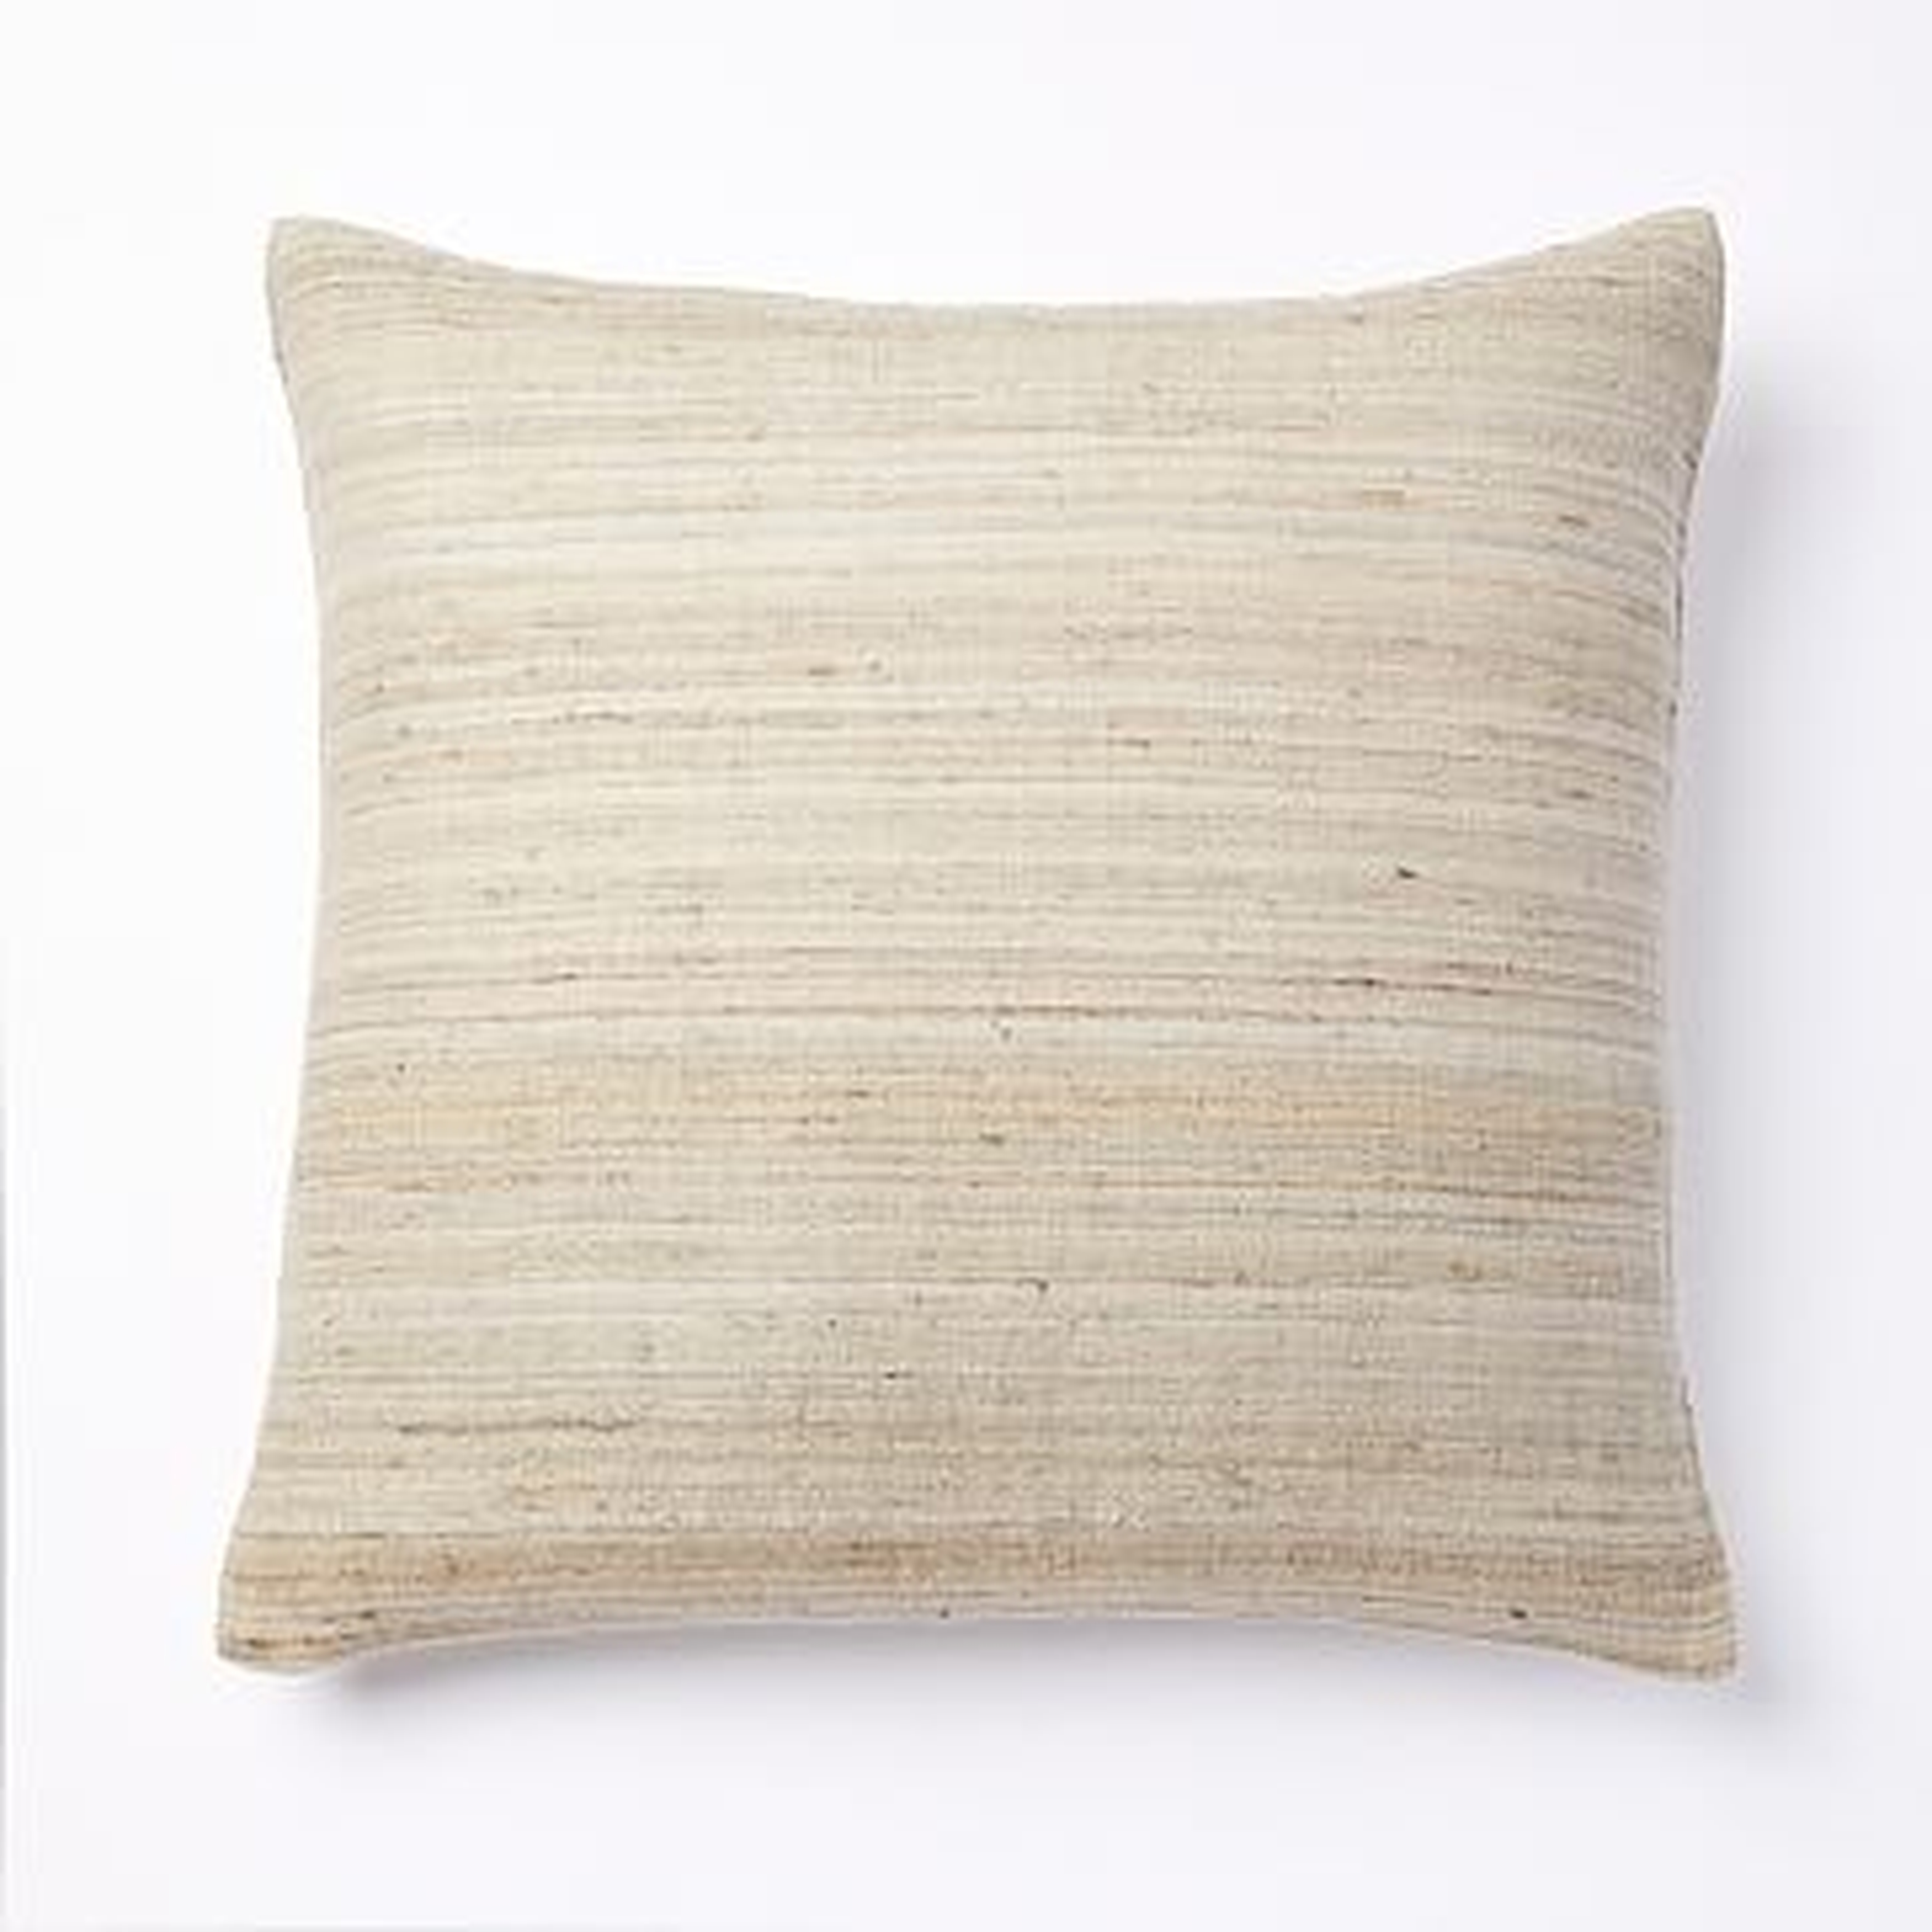 Woven Silk Pillow Cover, 20"x20", Belgian Flax - West Elm